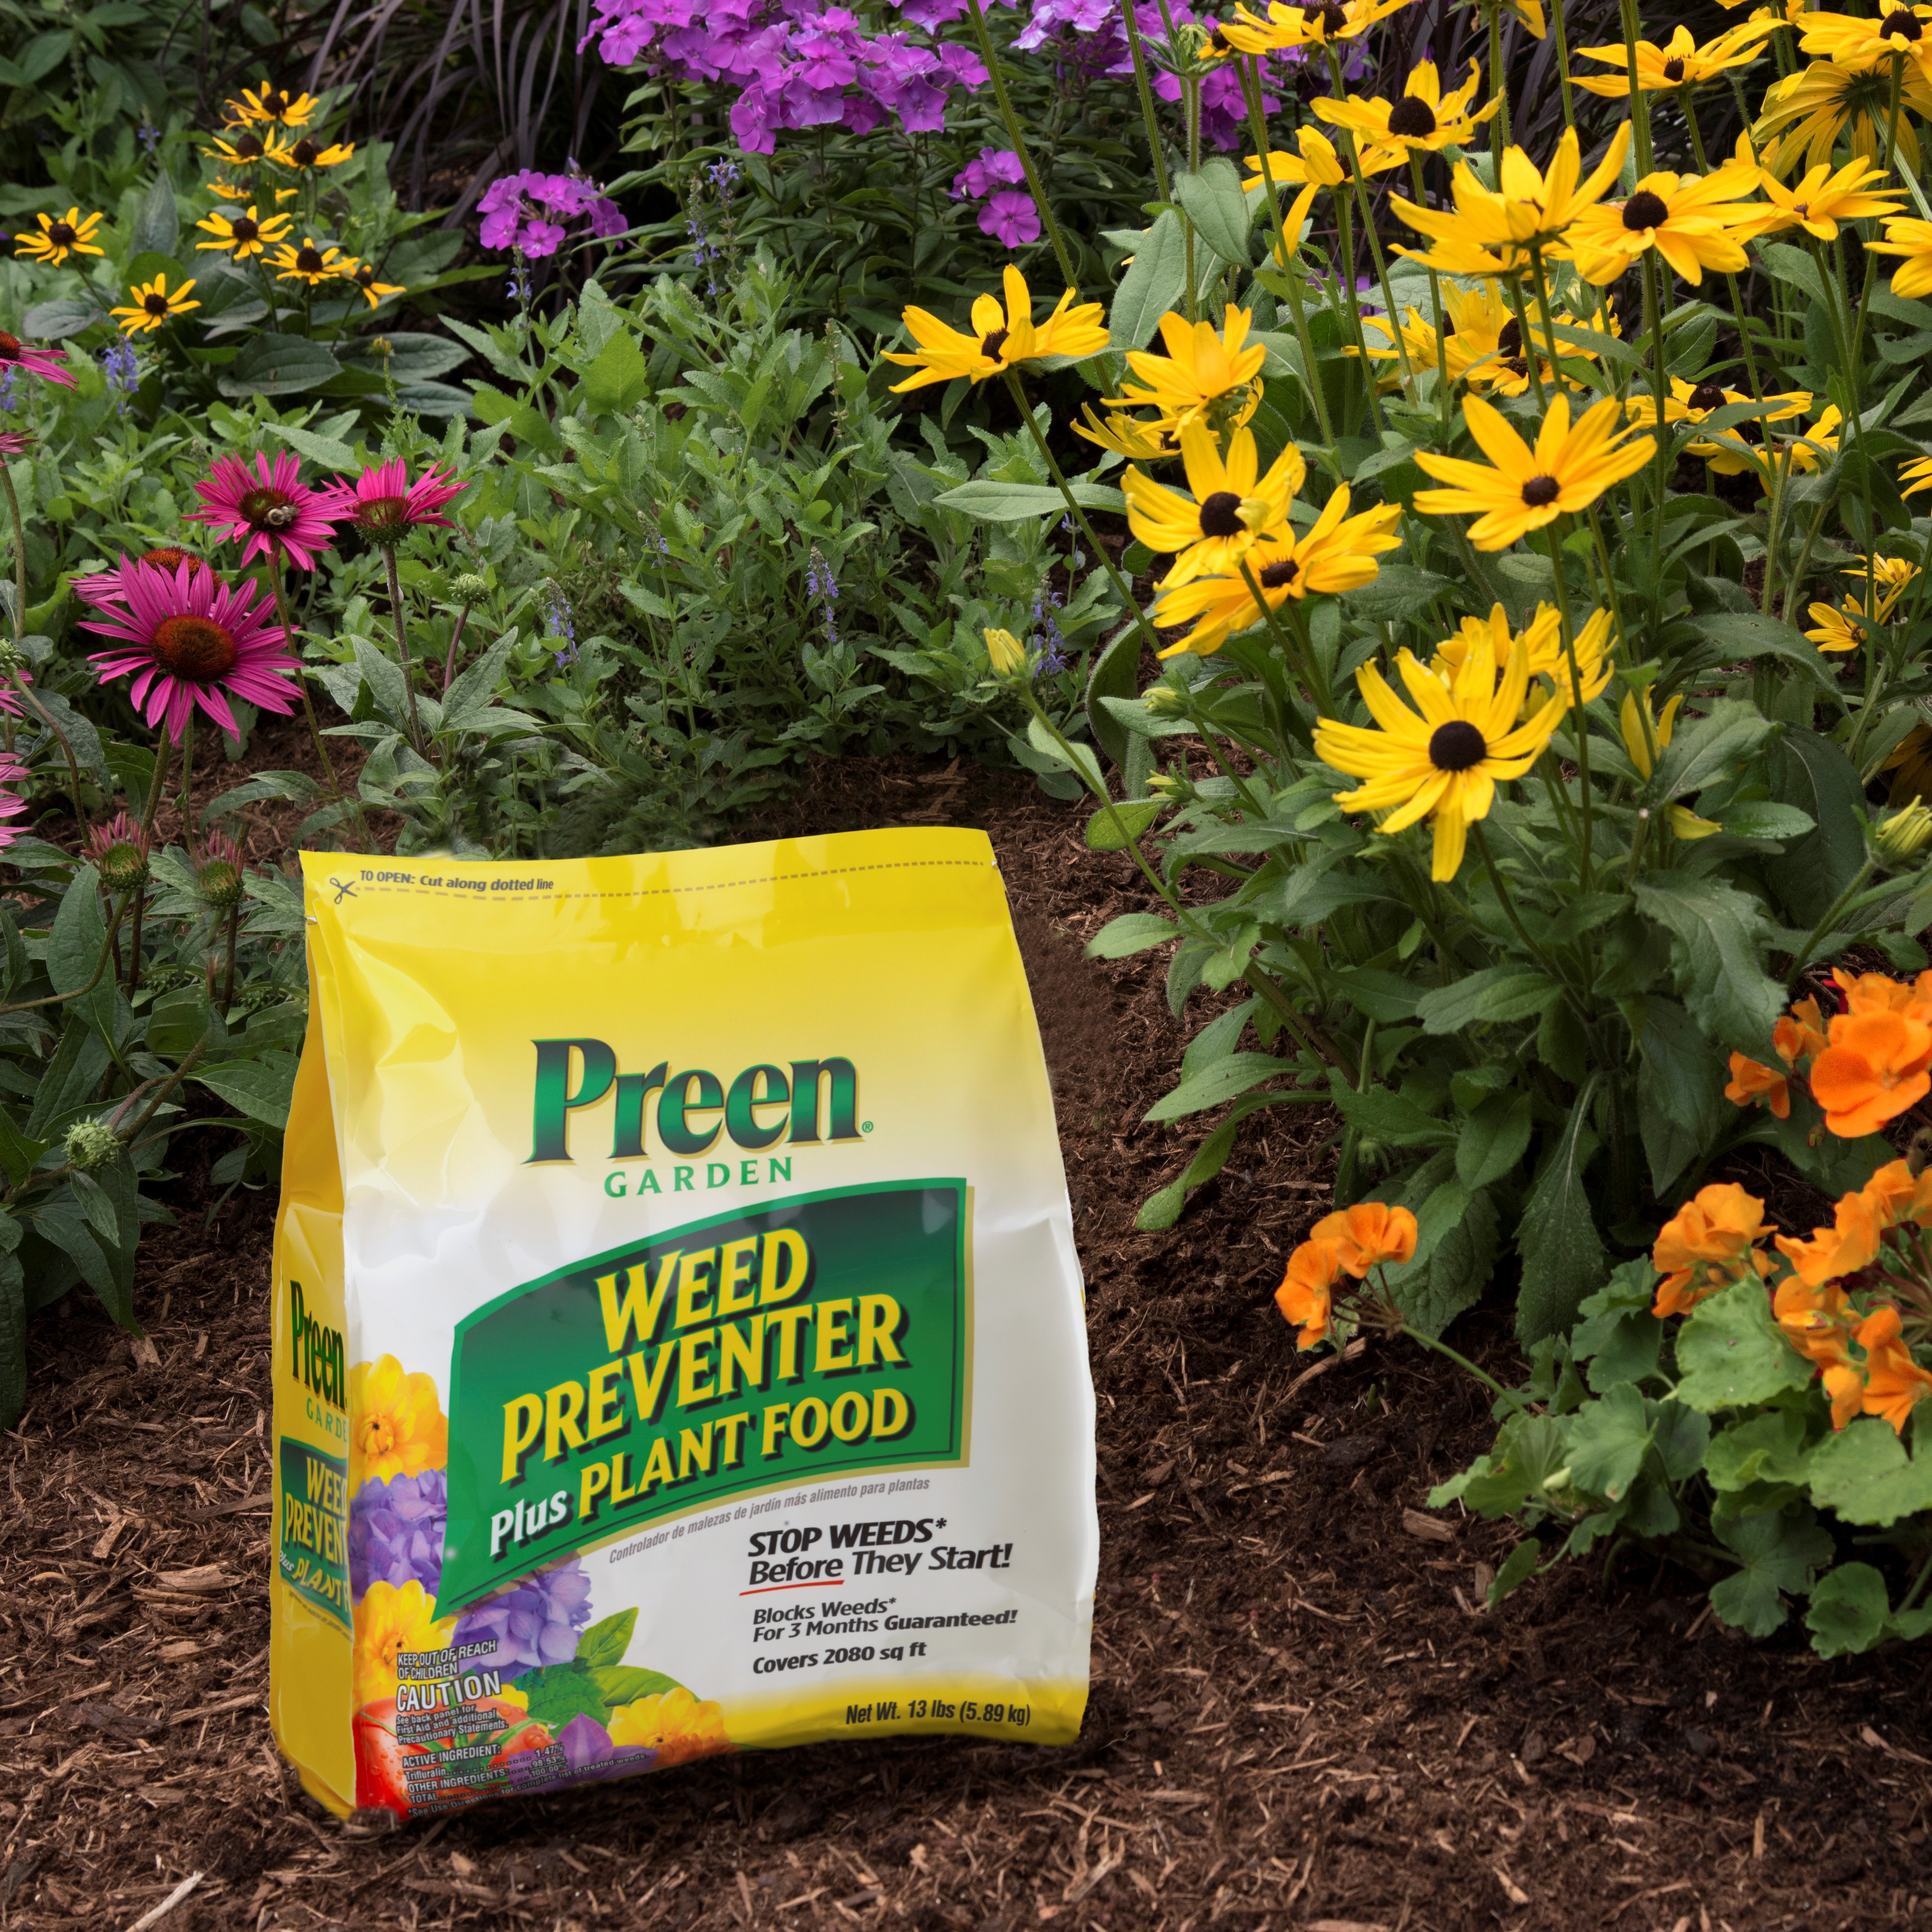 Preen Garden Weed Preveneter Plus Plant Food